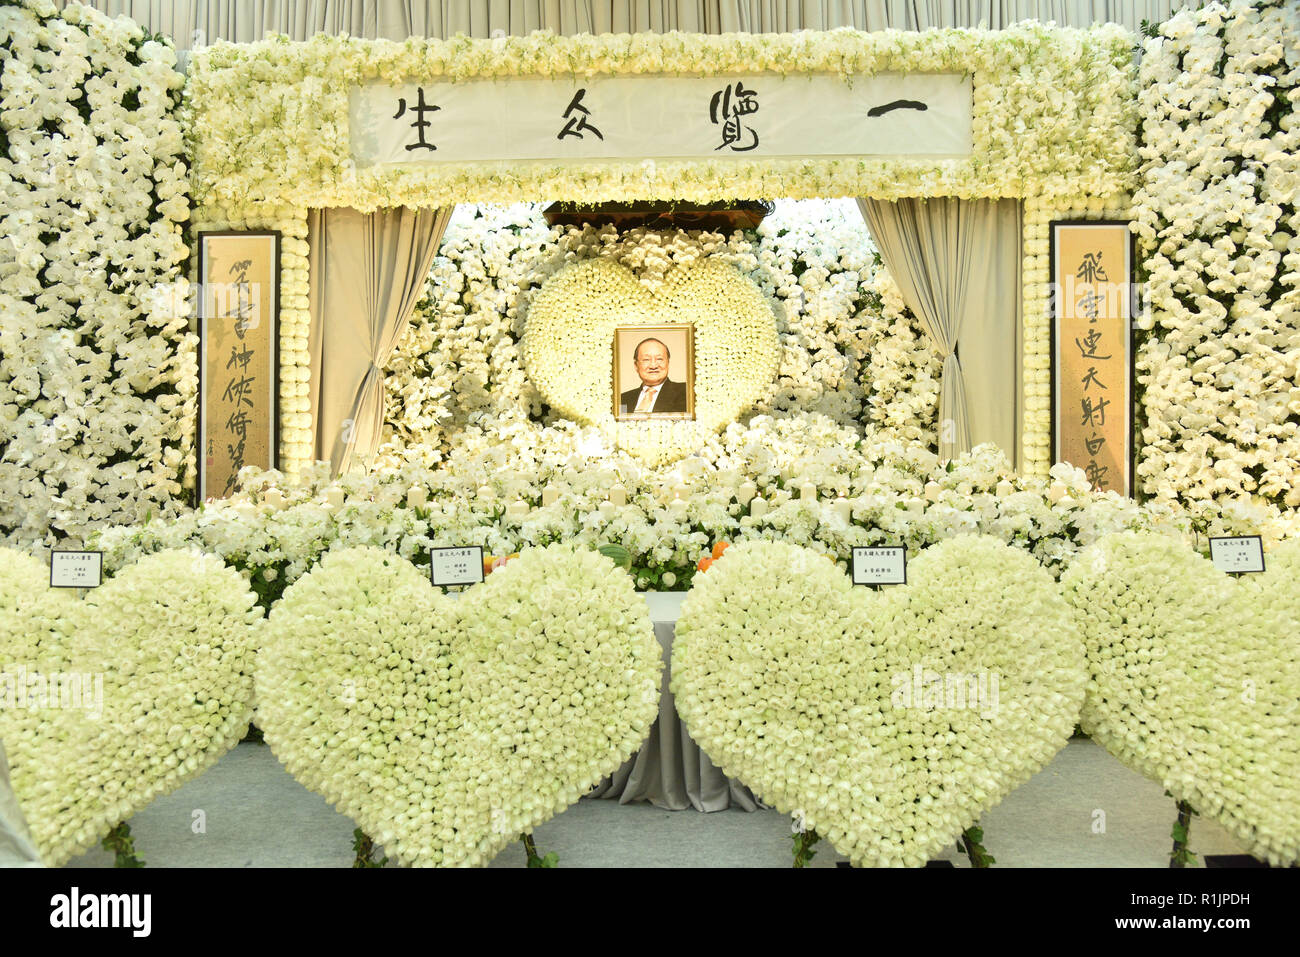 Hong Kong. 13 Nov, 2018. Las flores están dispuestas a pagar respecto a Jin Yong en el Tanatorio de Hong Kong en Hong Kong, sur de China, el 12 de noviembre, 2018. Jin Yong, cuyo verdadero nombre es Zha Liangyong (también conocido como Louis Cha), se considera universalmente como el más influyente Wuxia (artes marciales y caballerosidad) novelista del siglo XX. Murió entre el 94 el 30 de octubre. Su funeral se celebró el 12 de noviembre en el Tanatorio de Hong Kong. Crédito: Xinhua/Alamy Live News Foto de stock